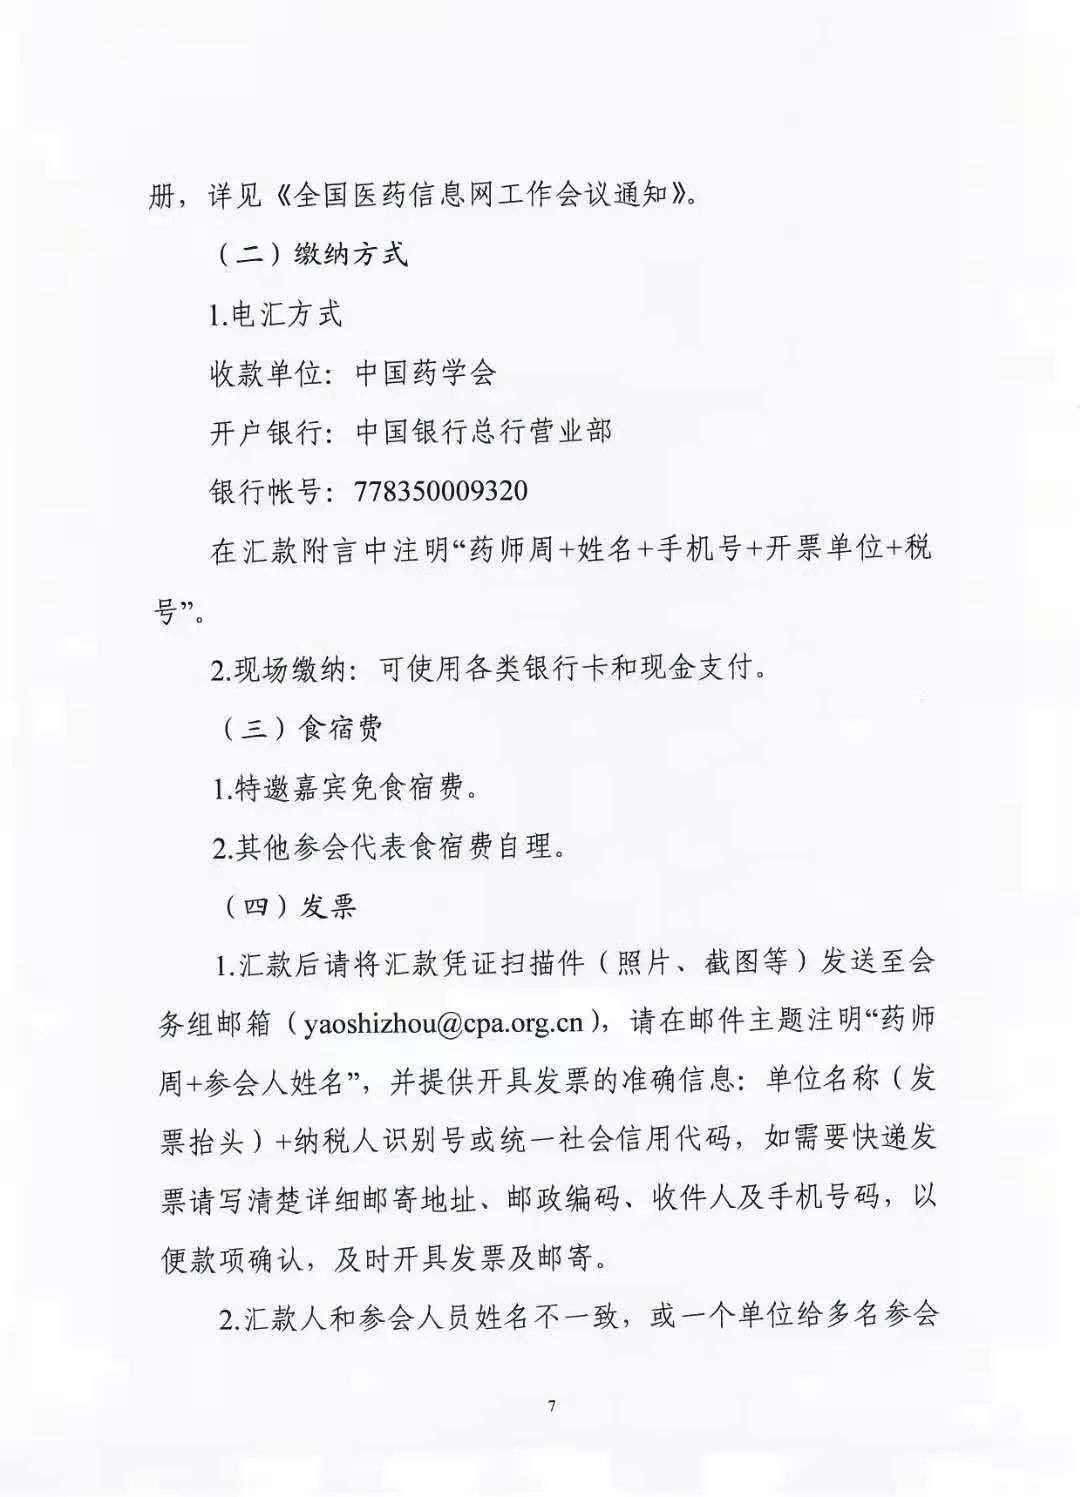 关于举办中国药学会第二十一届中国药师周的通知（第一轮）(图7)